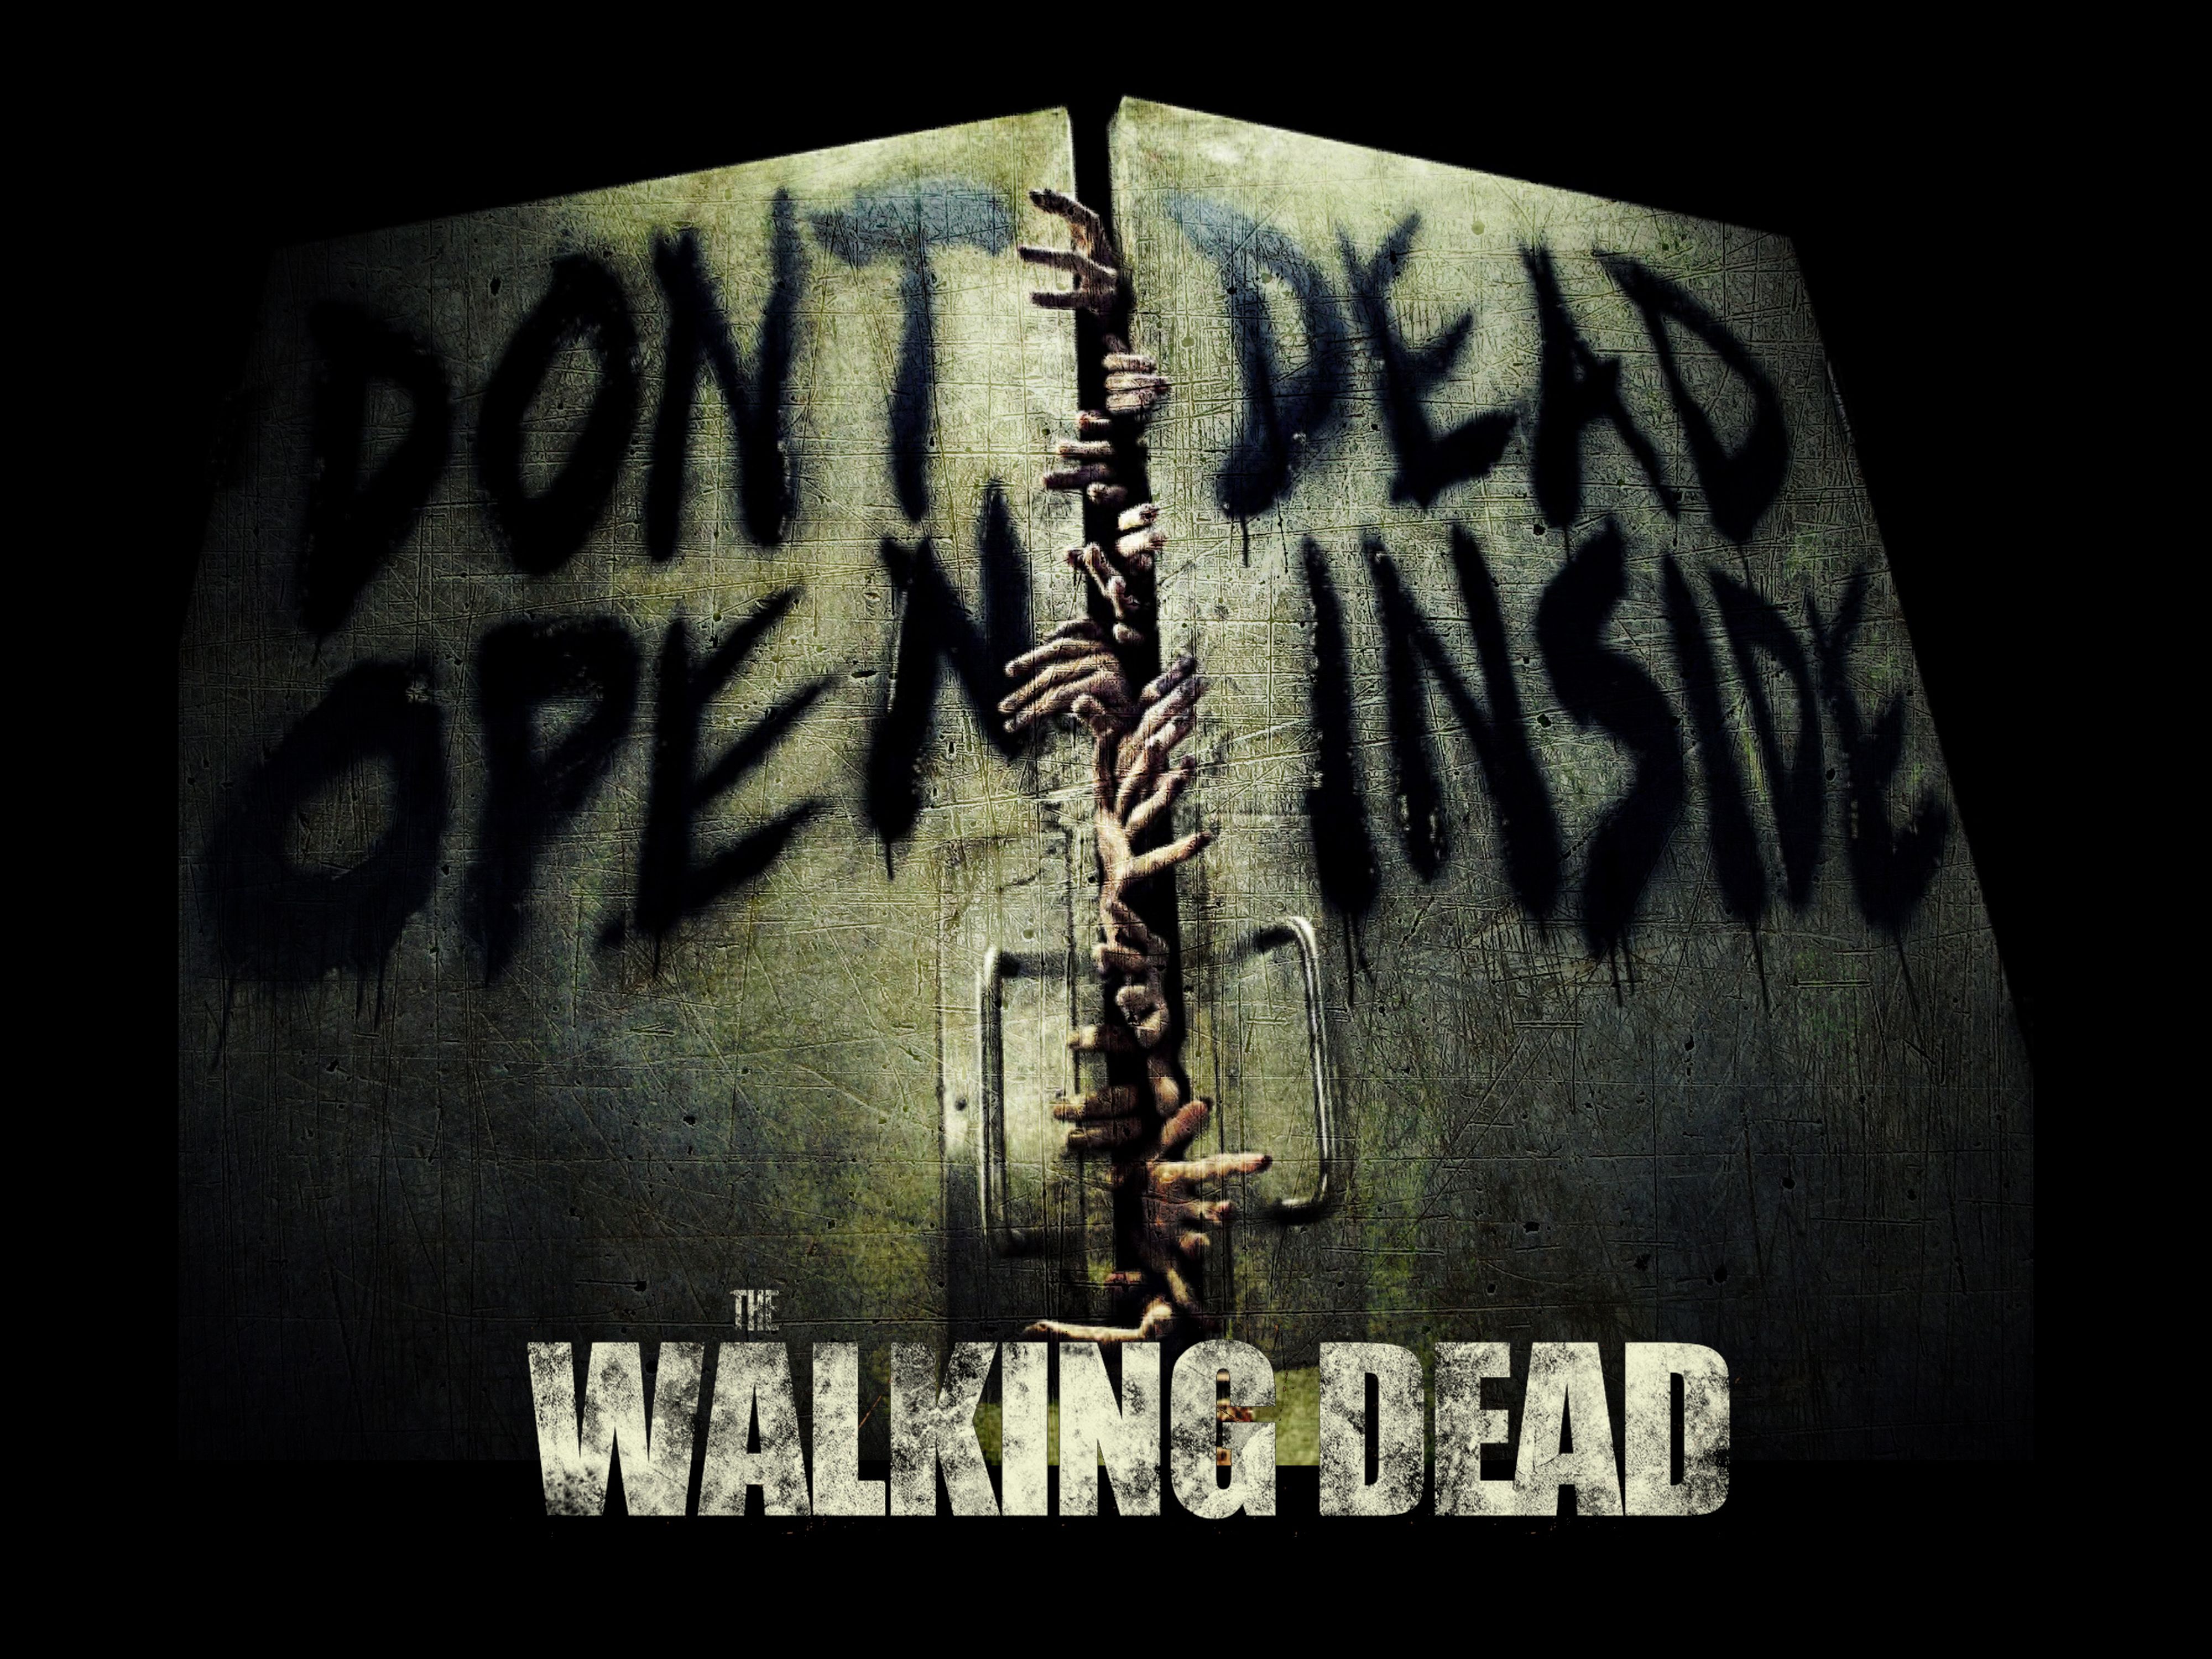 The Walking Dead Wallpaper Dead Dont Open Dead Inside